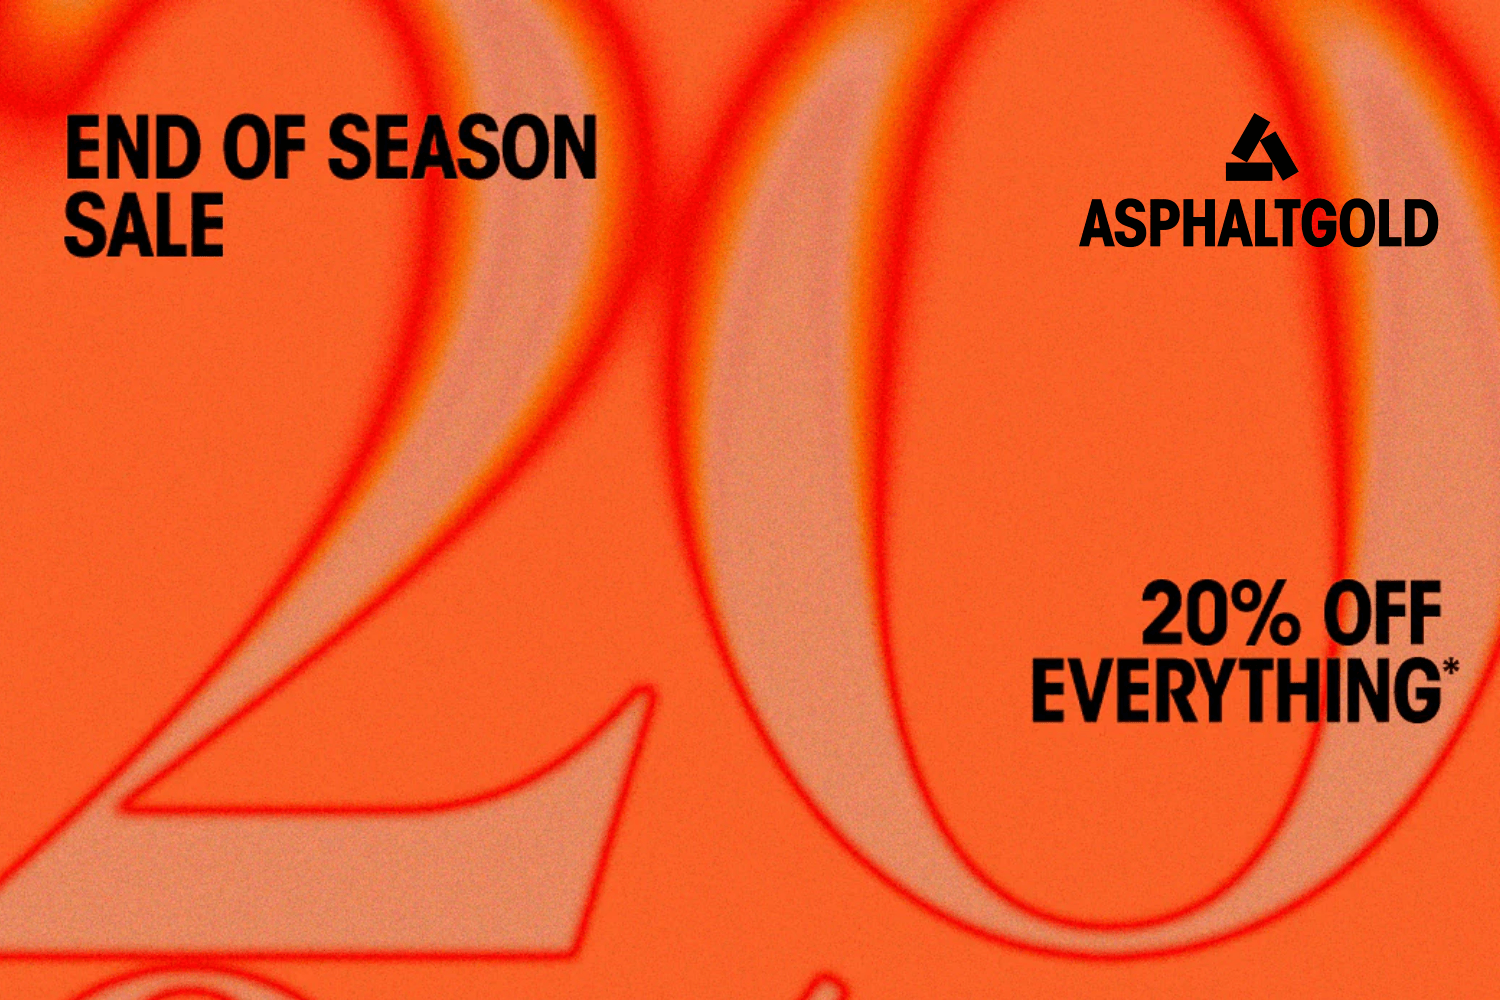 Nur für kurze Zeit: 20% Rabatt im Asphaltgold End of Season Sale